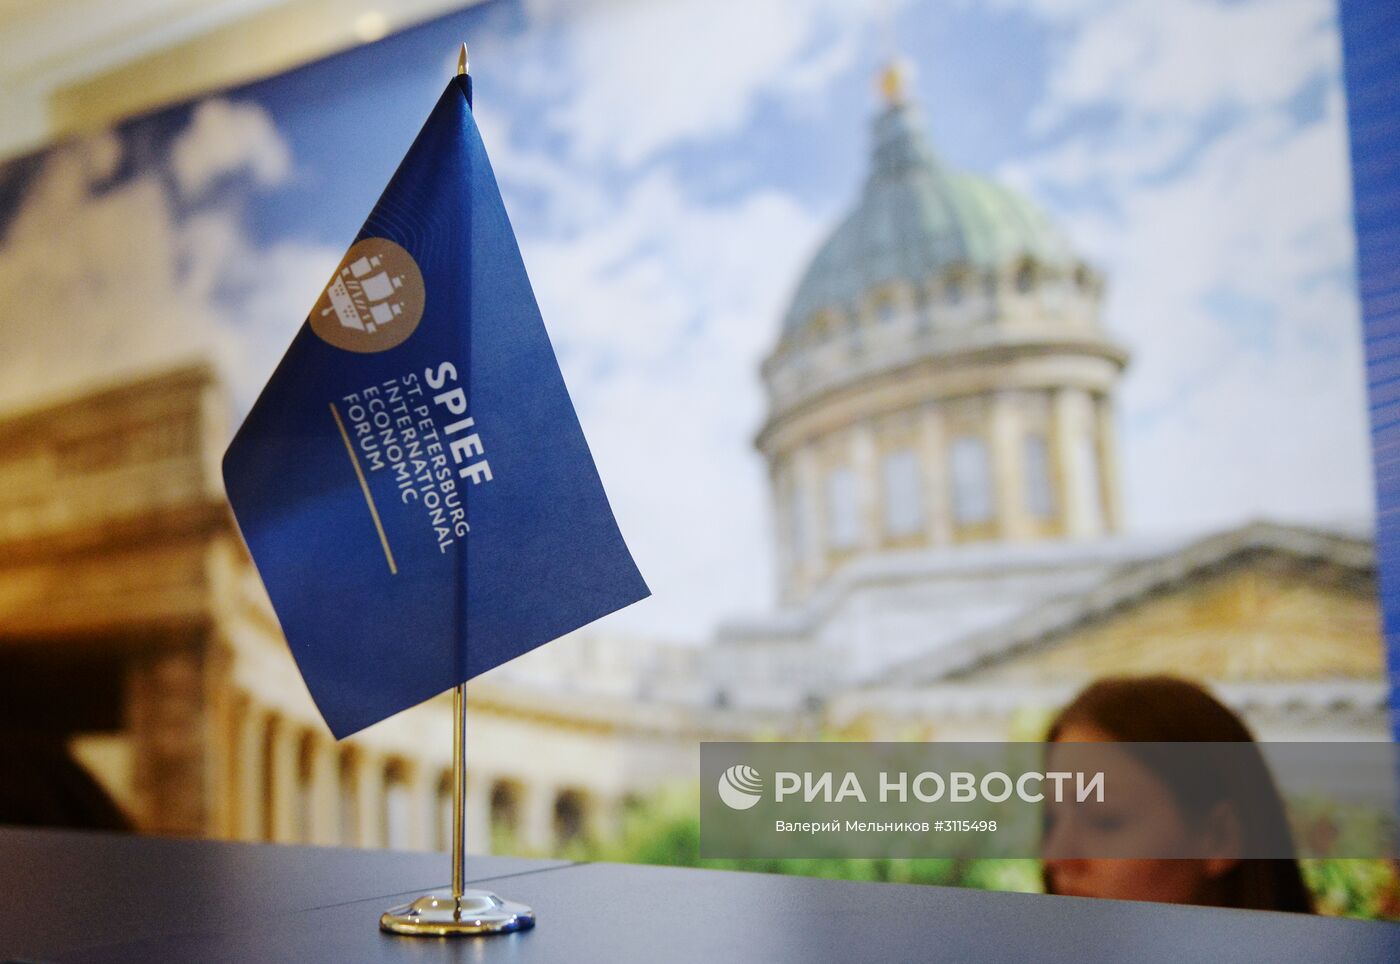 Подготовка к открытию Петербургского экономического форума